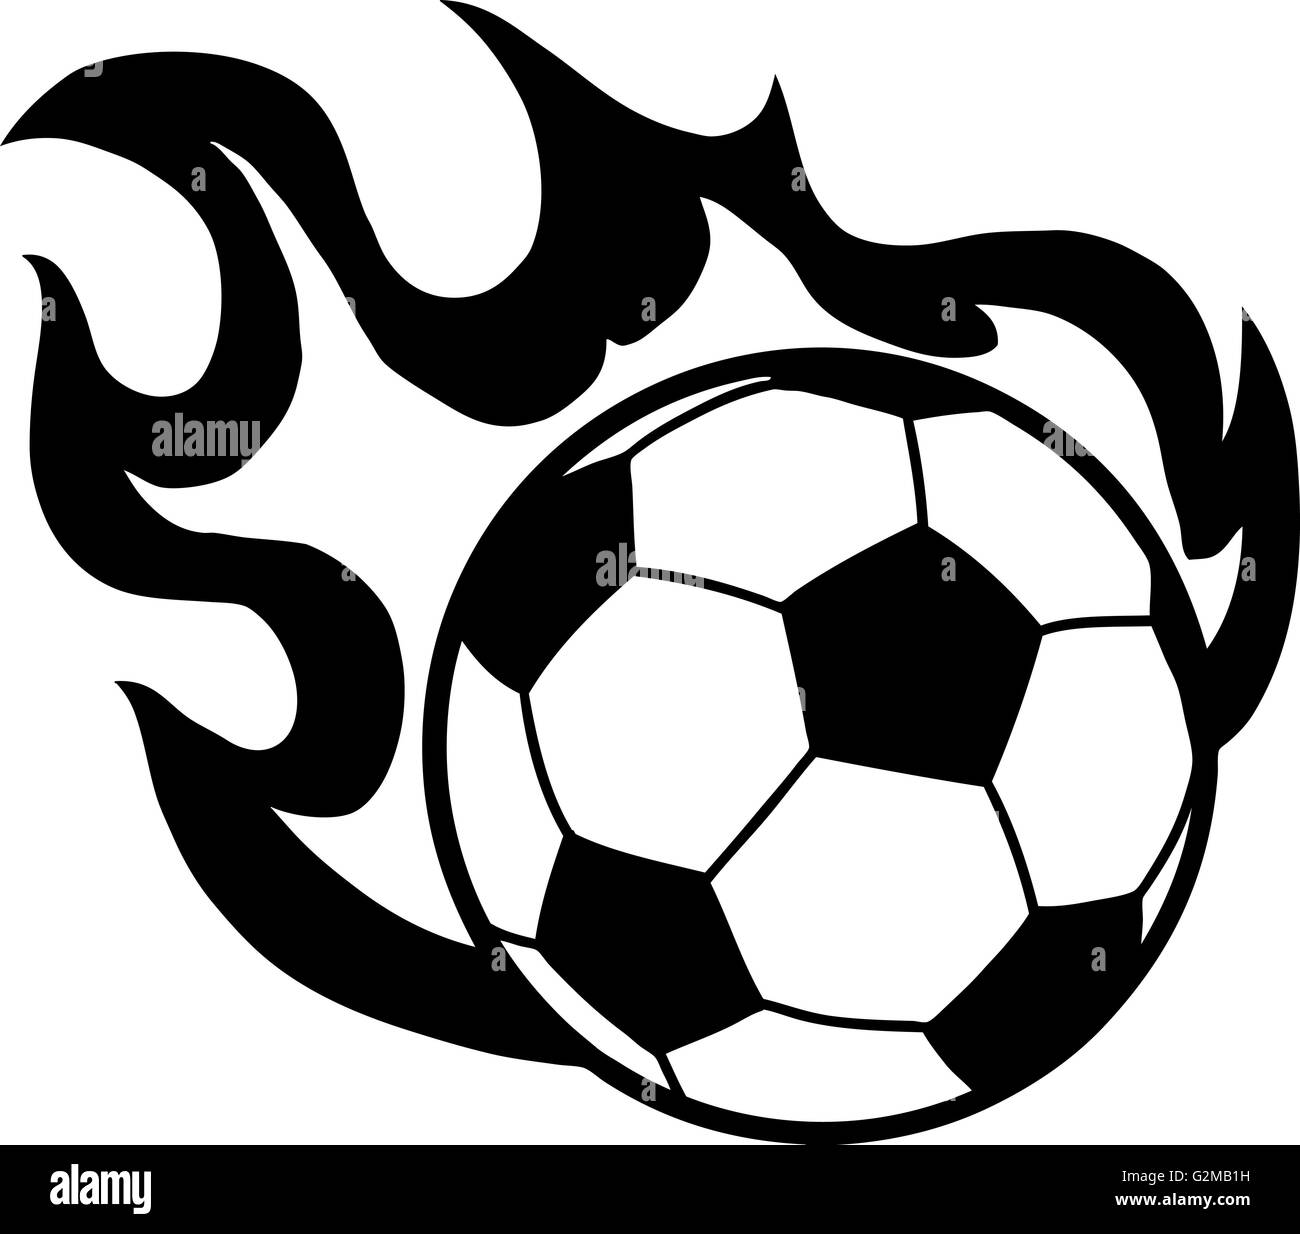 Ballon de soccer sur fond blanc Banque D'Images